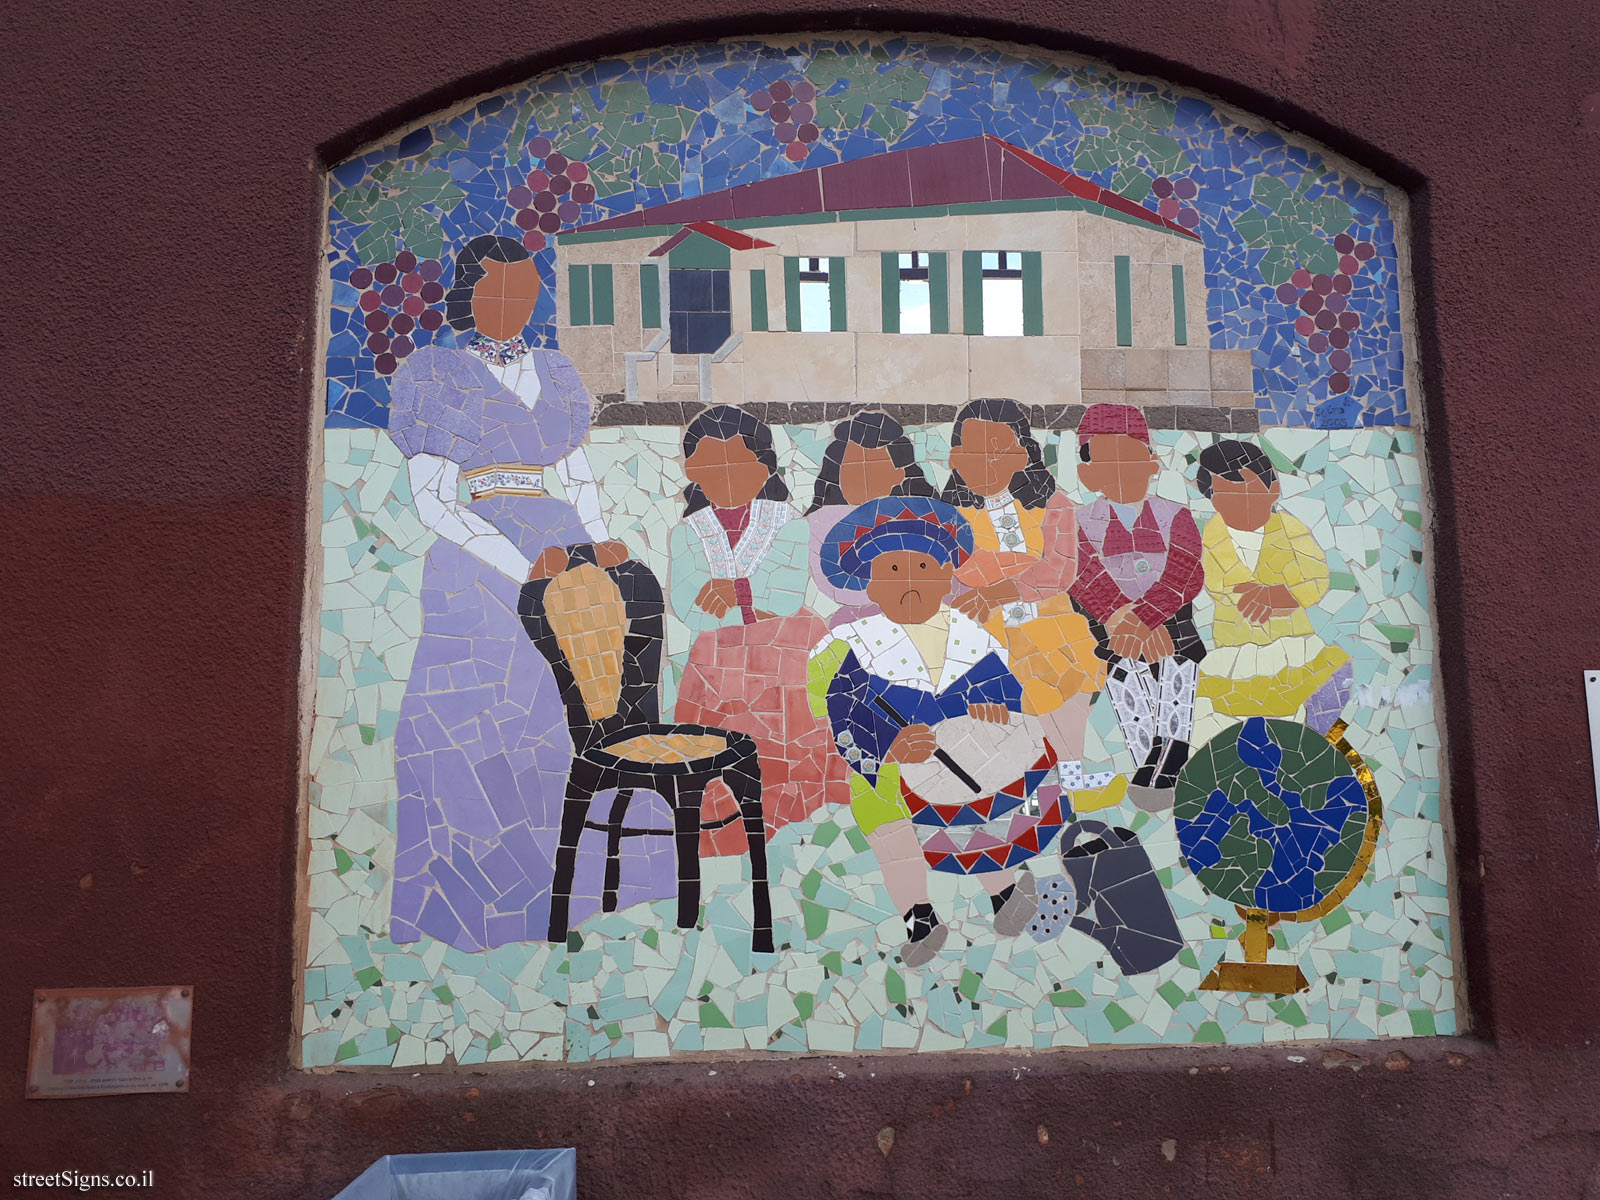 Rishon LeZion - In Mosaics - Childern of the First Hebrew Kindergarten in the world